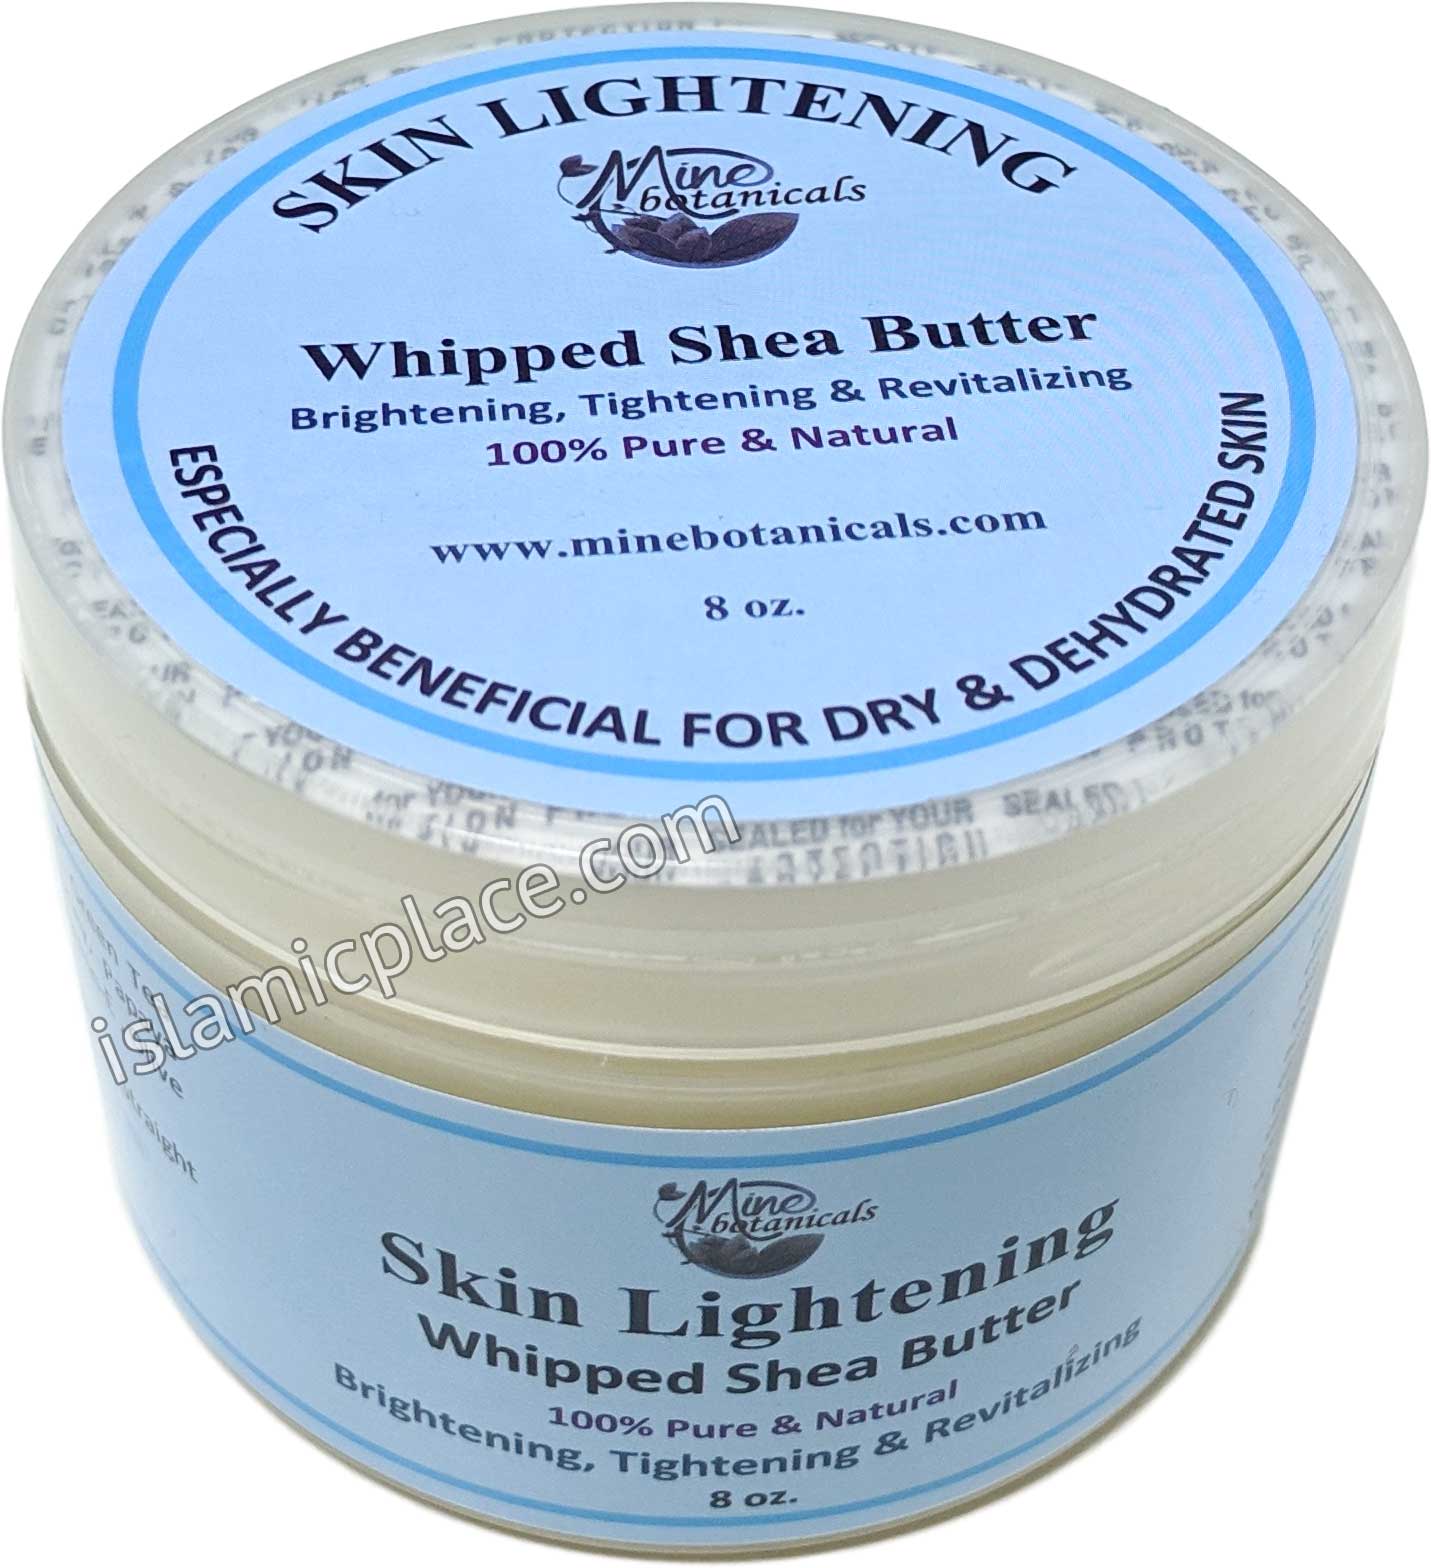 Skin Lightening Whipped Shea Butter